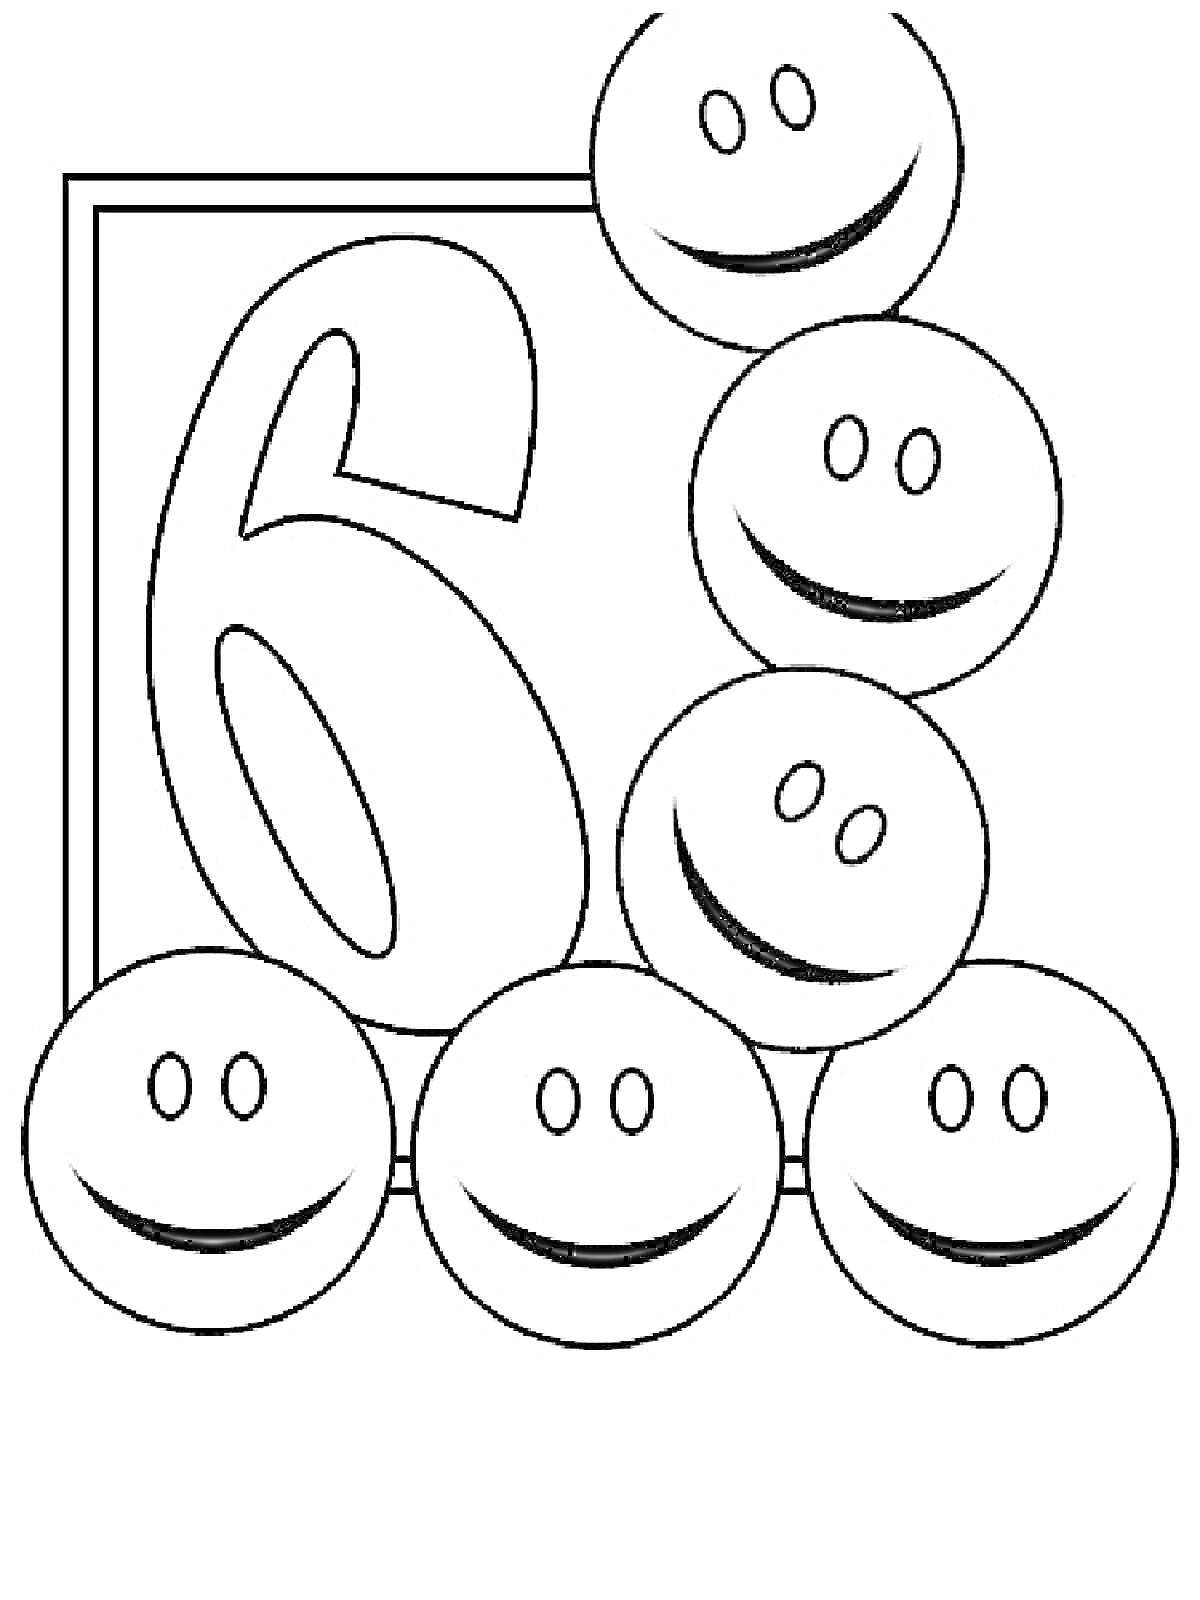 Раскраска Цифра 6 в окружении смайликов